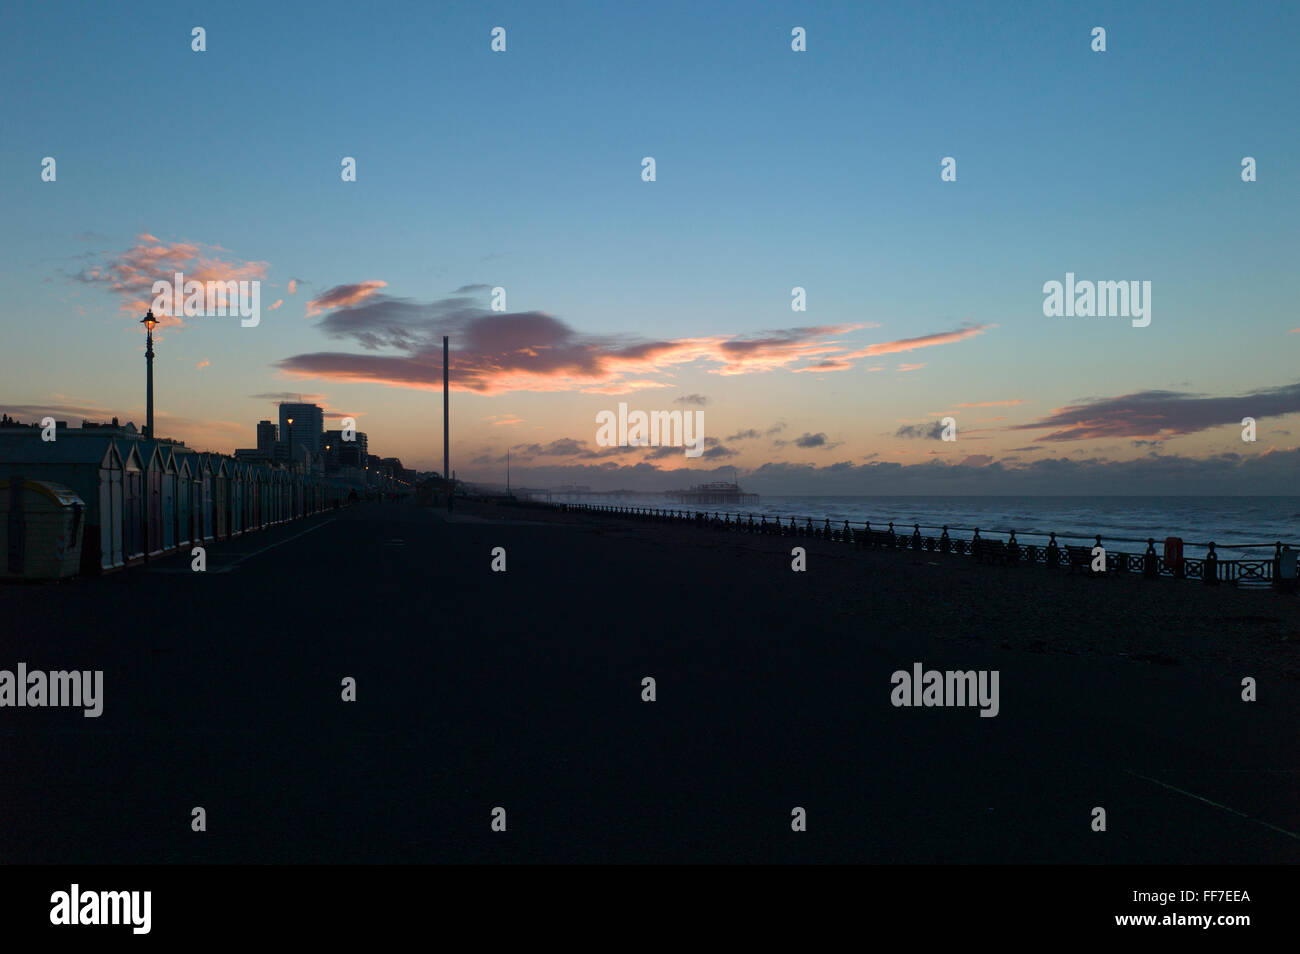 Dawn Wolken über Meer und Strand Hütten, entfernten Stadt in der Silhouette, i360, Hove, Sussex, UK Stockfoto